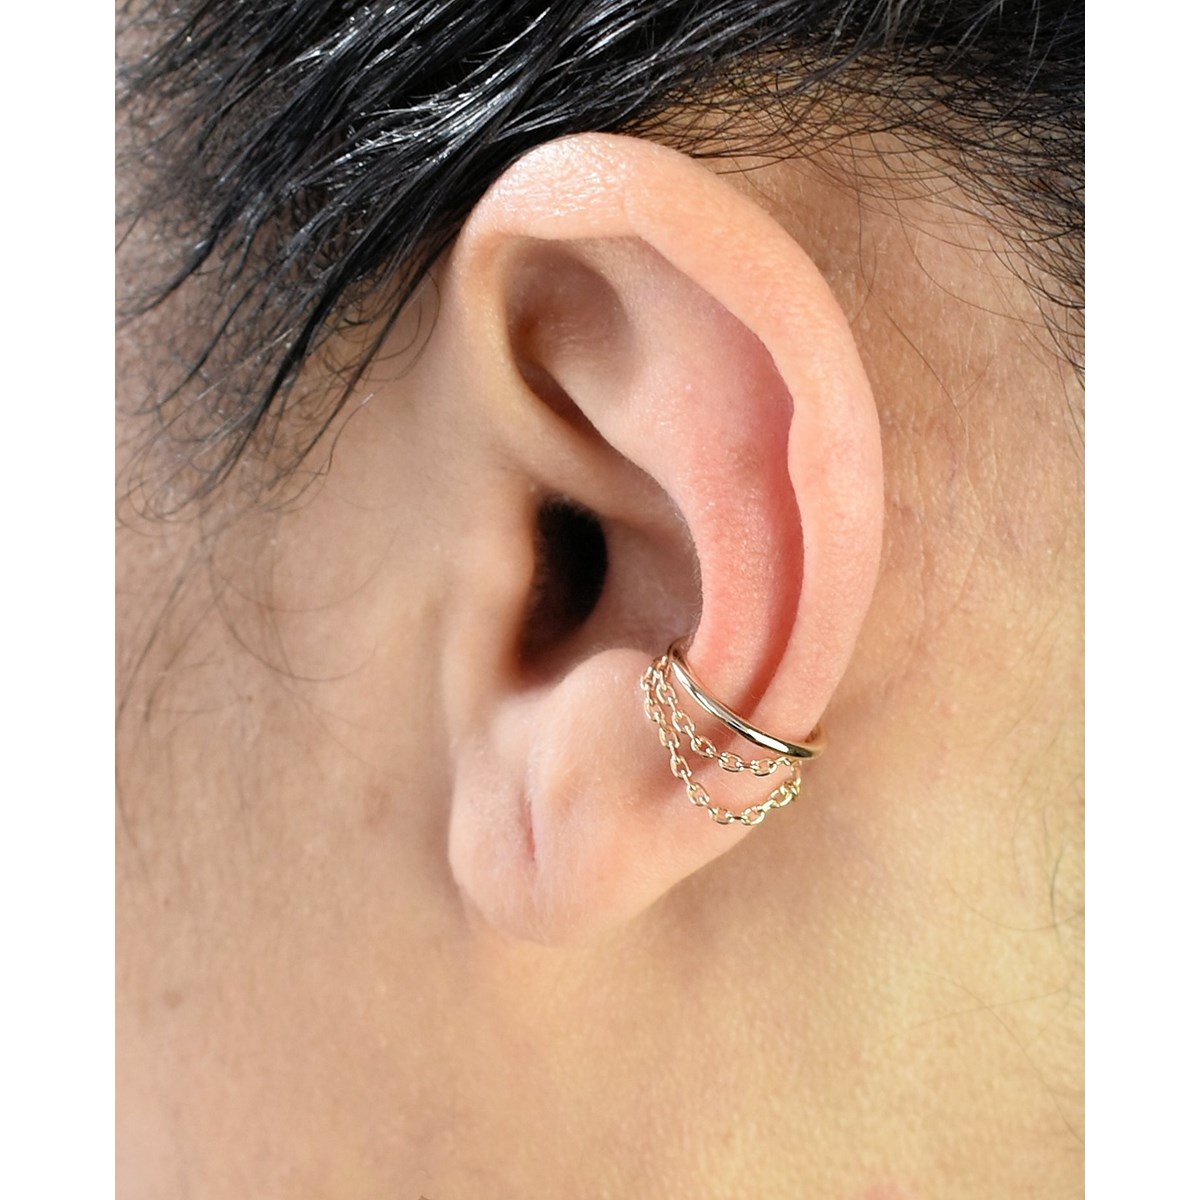 Clip d'oreille earcuff 2 chainettes pendantes Plaqué OR 750 3 microns - vue 3